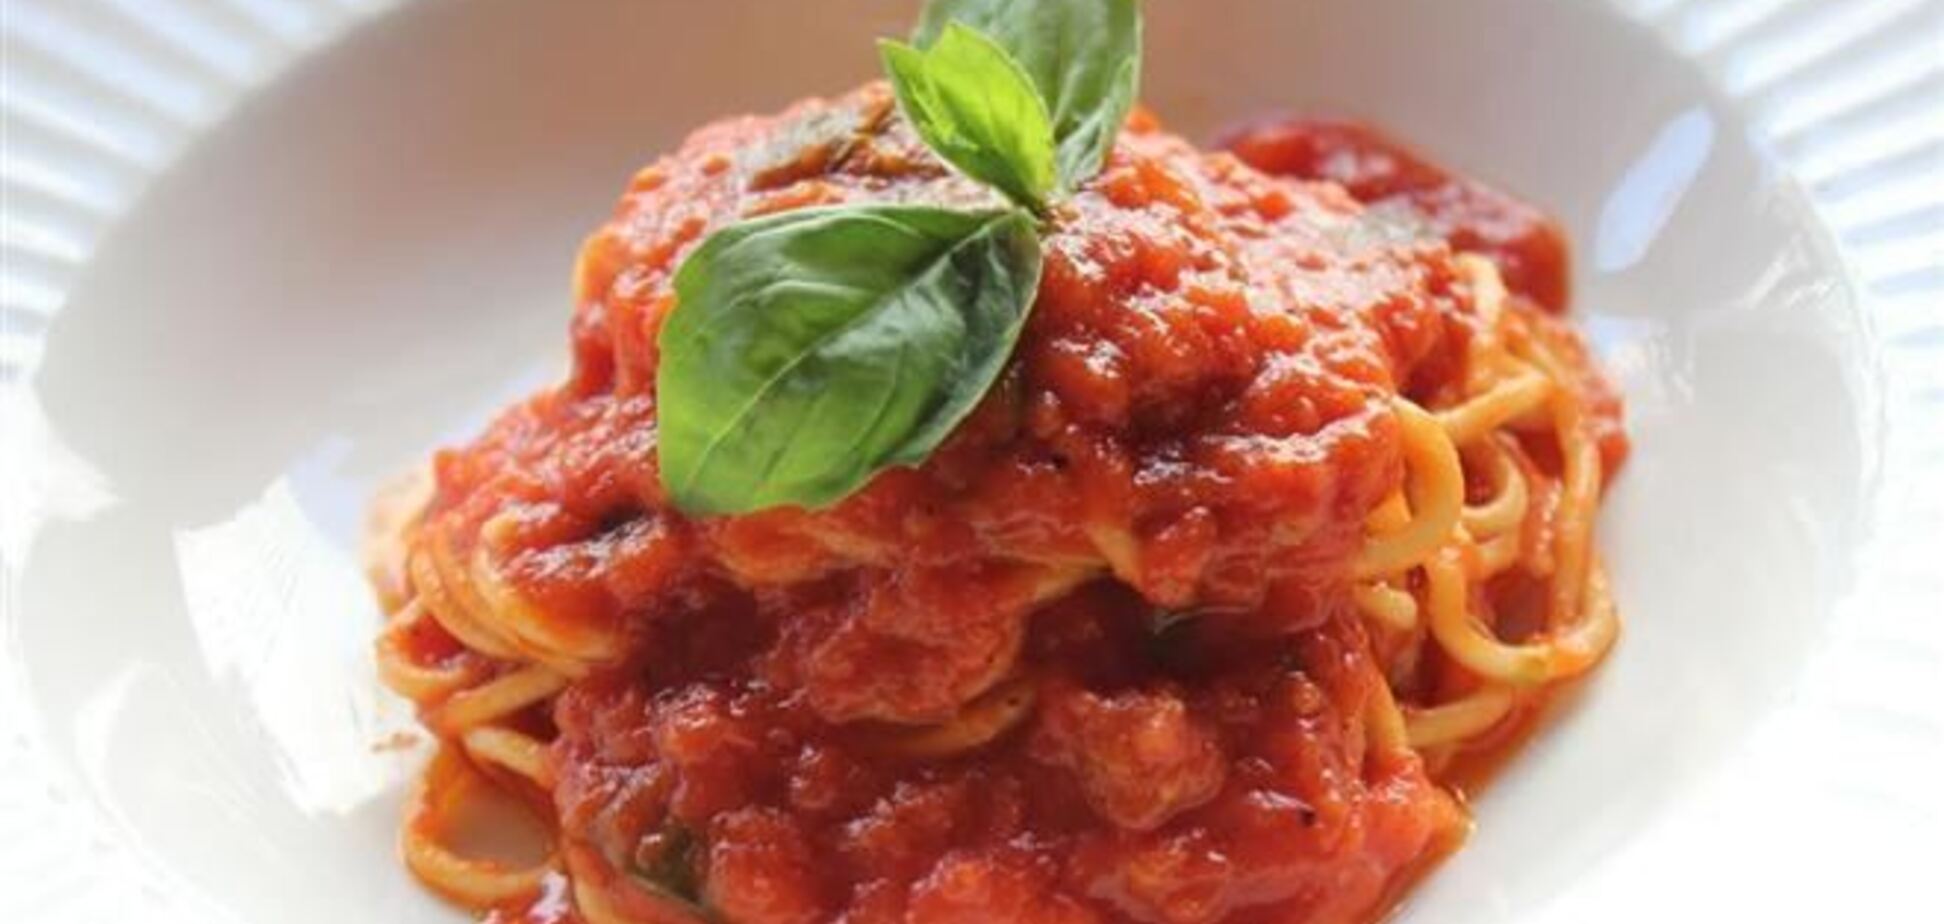 Постное меню. Спагетти с базиликом и чесноком в томатном соусе